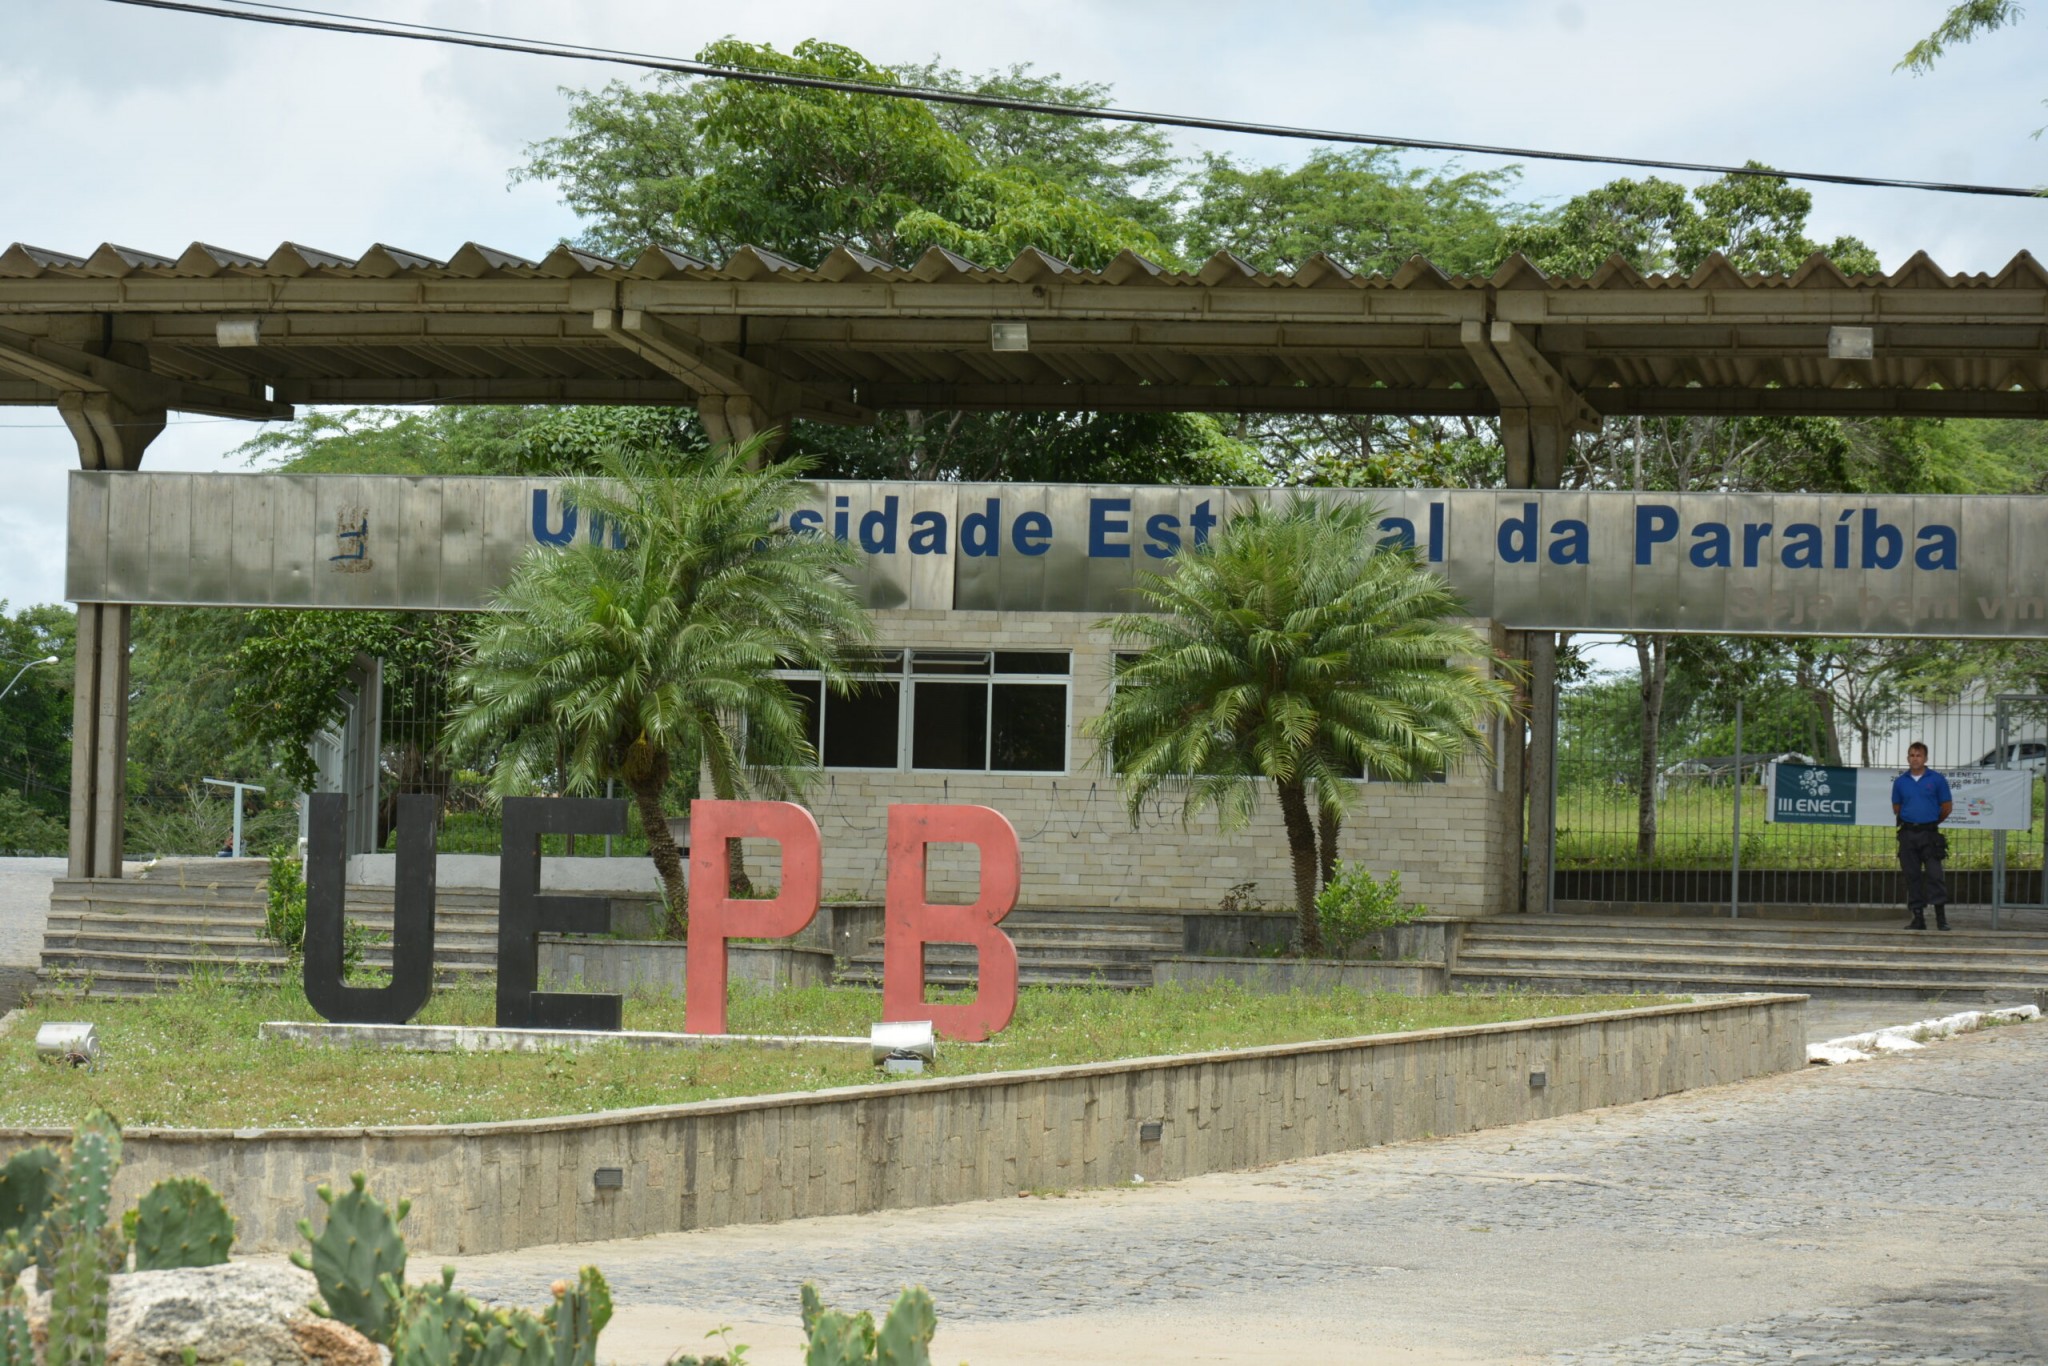 Universidade-Estadual-da-Paraiba-Foto-Divulgacao-scaled-1 UEPB divulga edital para preenchimento de vagas temporárias para funções técnico-administrativas